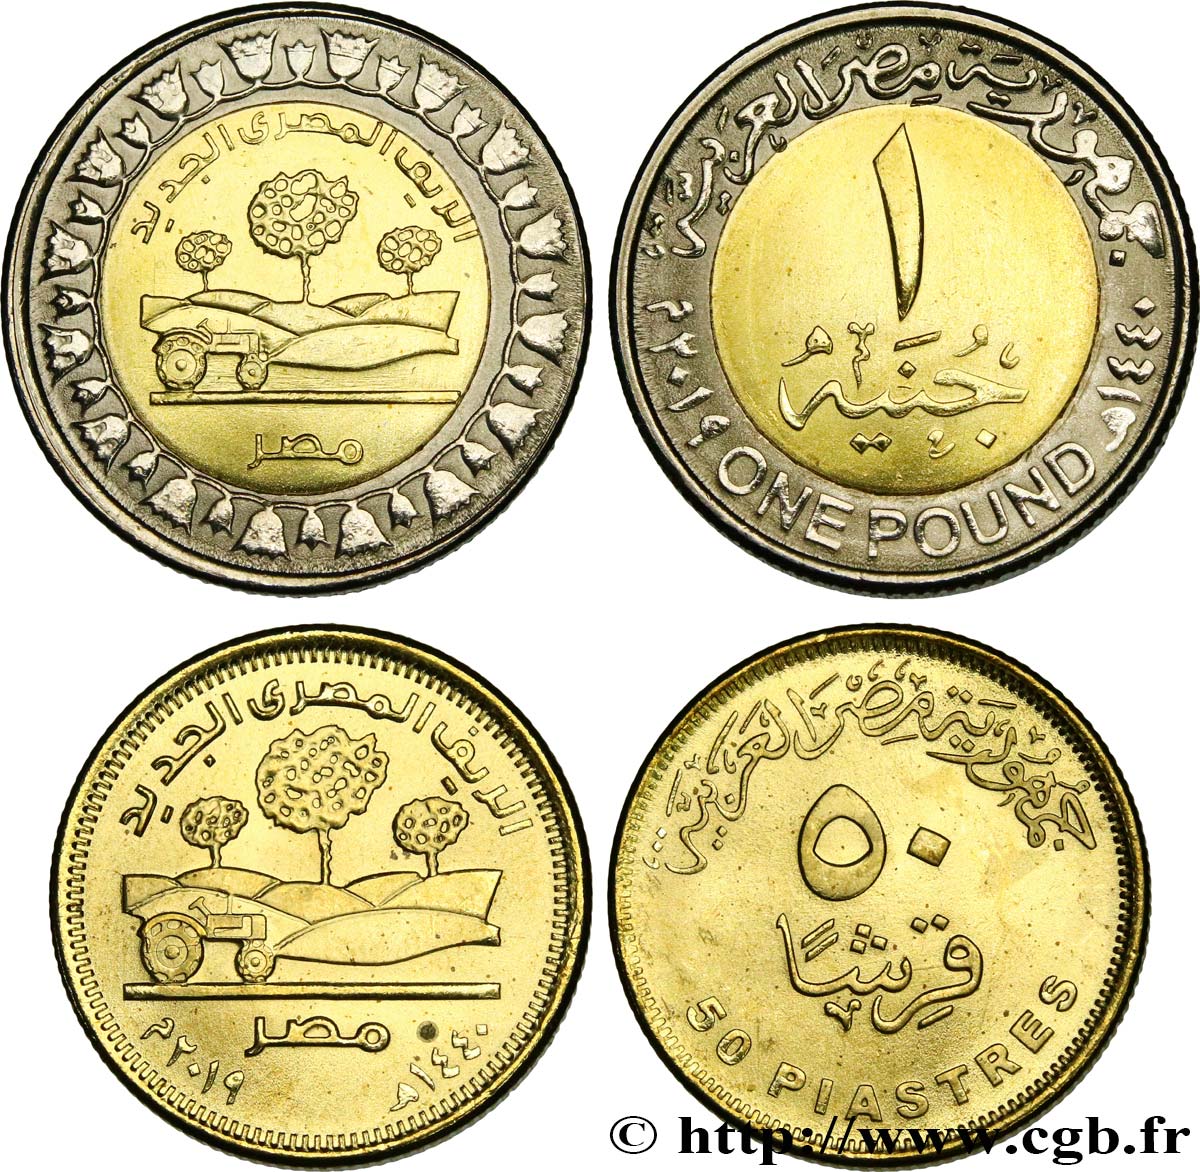 EGYPT Lot 50 Qirsh et 1 Pound (Livre) nouvelle campagne égyptienne AH 1440 2019  MS 